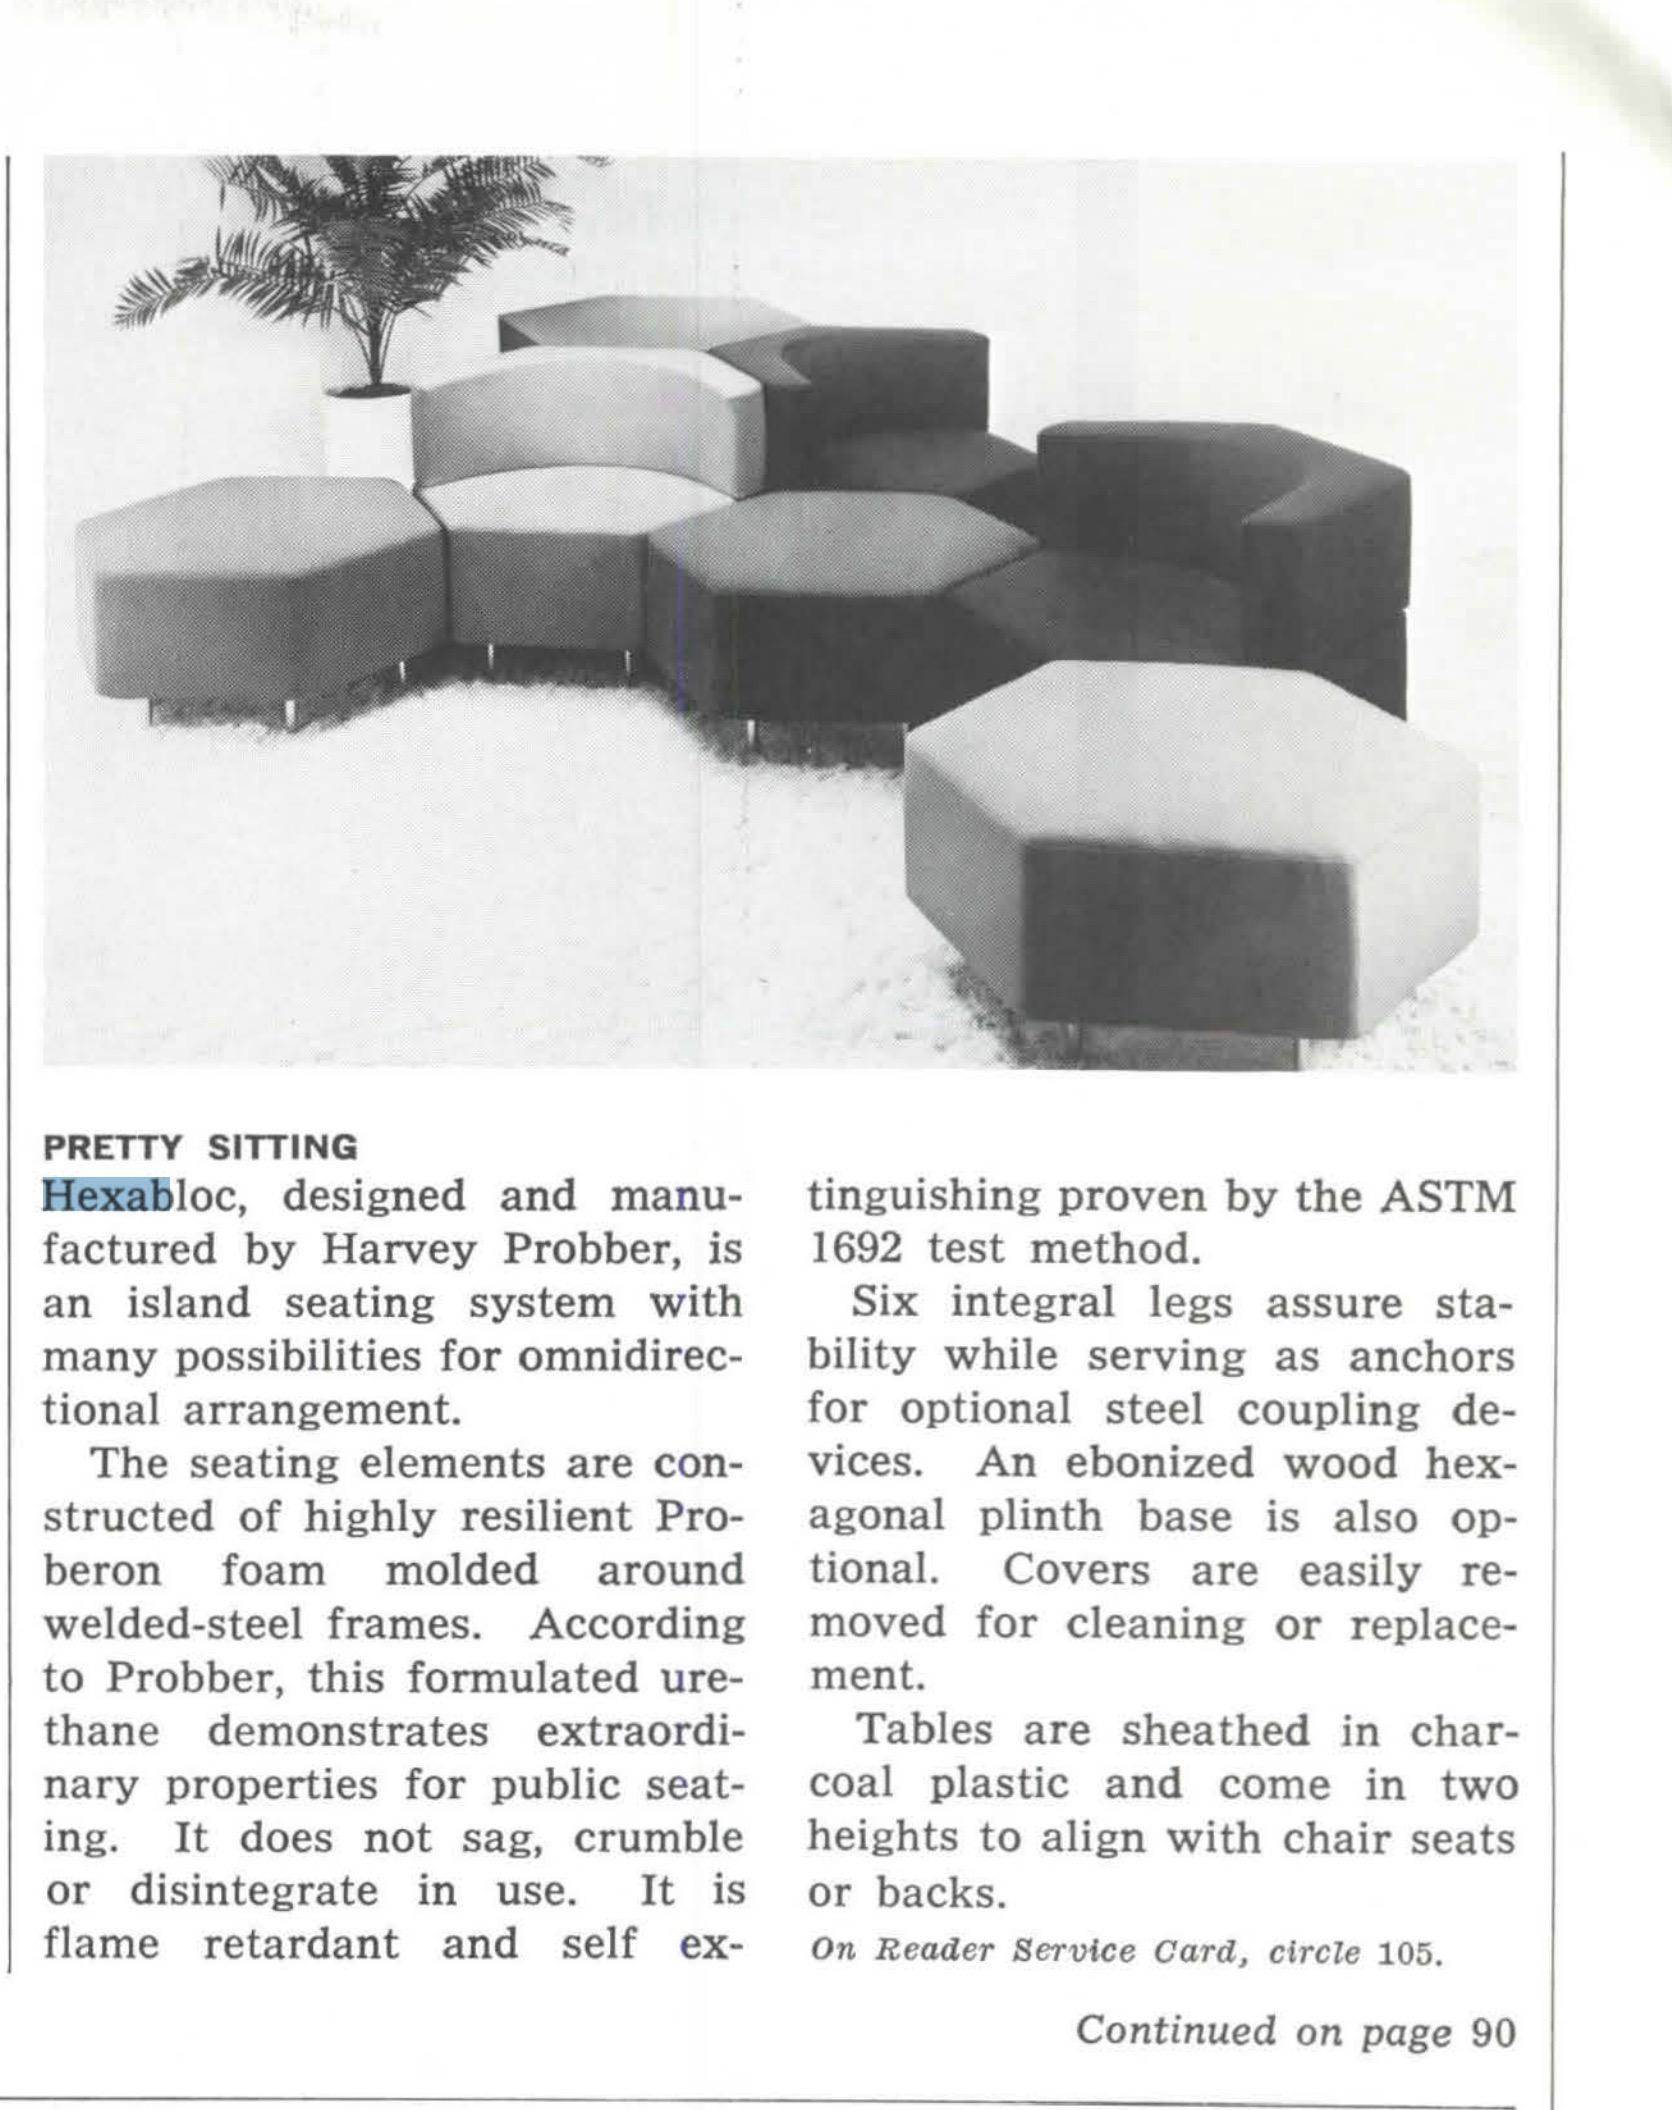 Chaise hexagonale originale conçue par Harvey Probber pour son système de sièges en îlots Hexabloc, avec de nombreuses possibilités d'agencement omnidirectionnel.
Fabriqué en mousse 